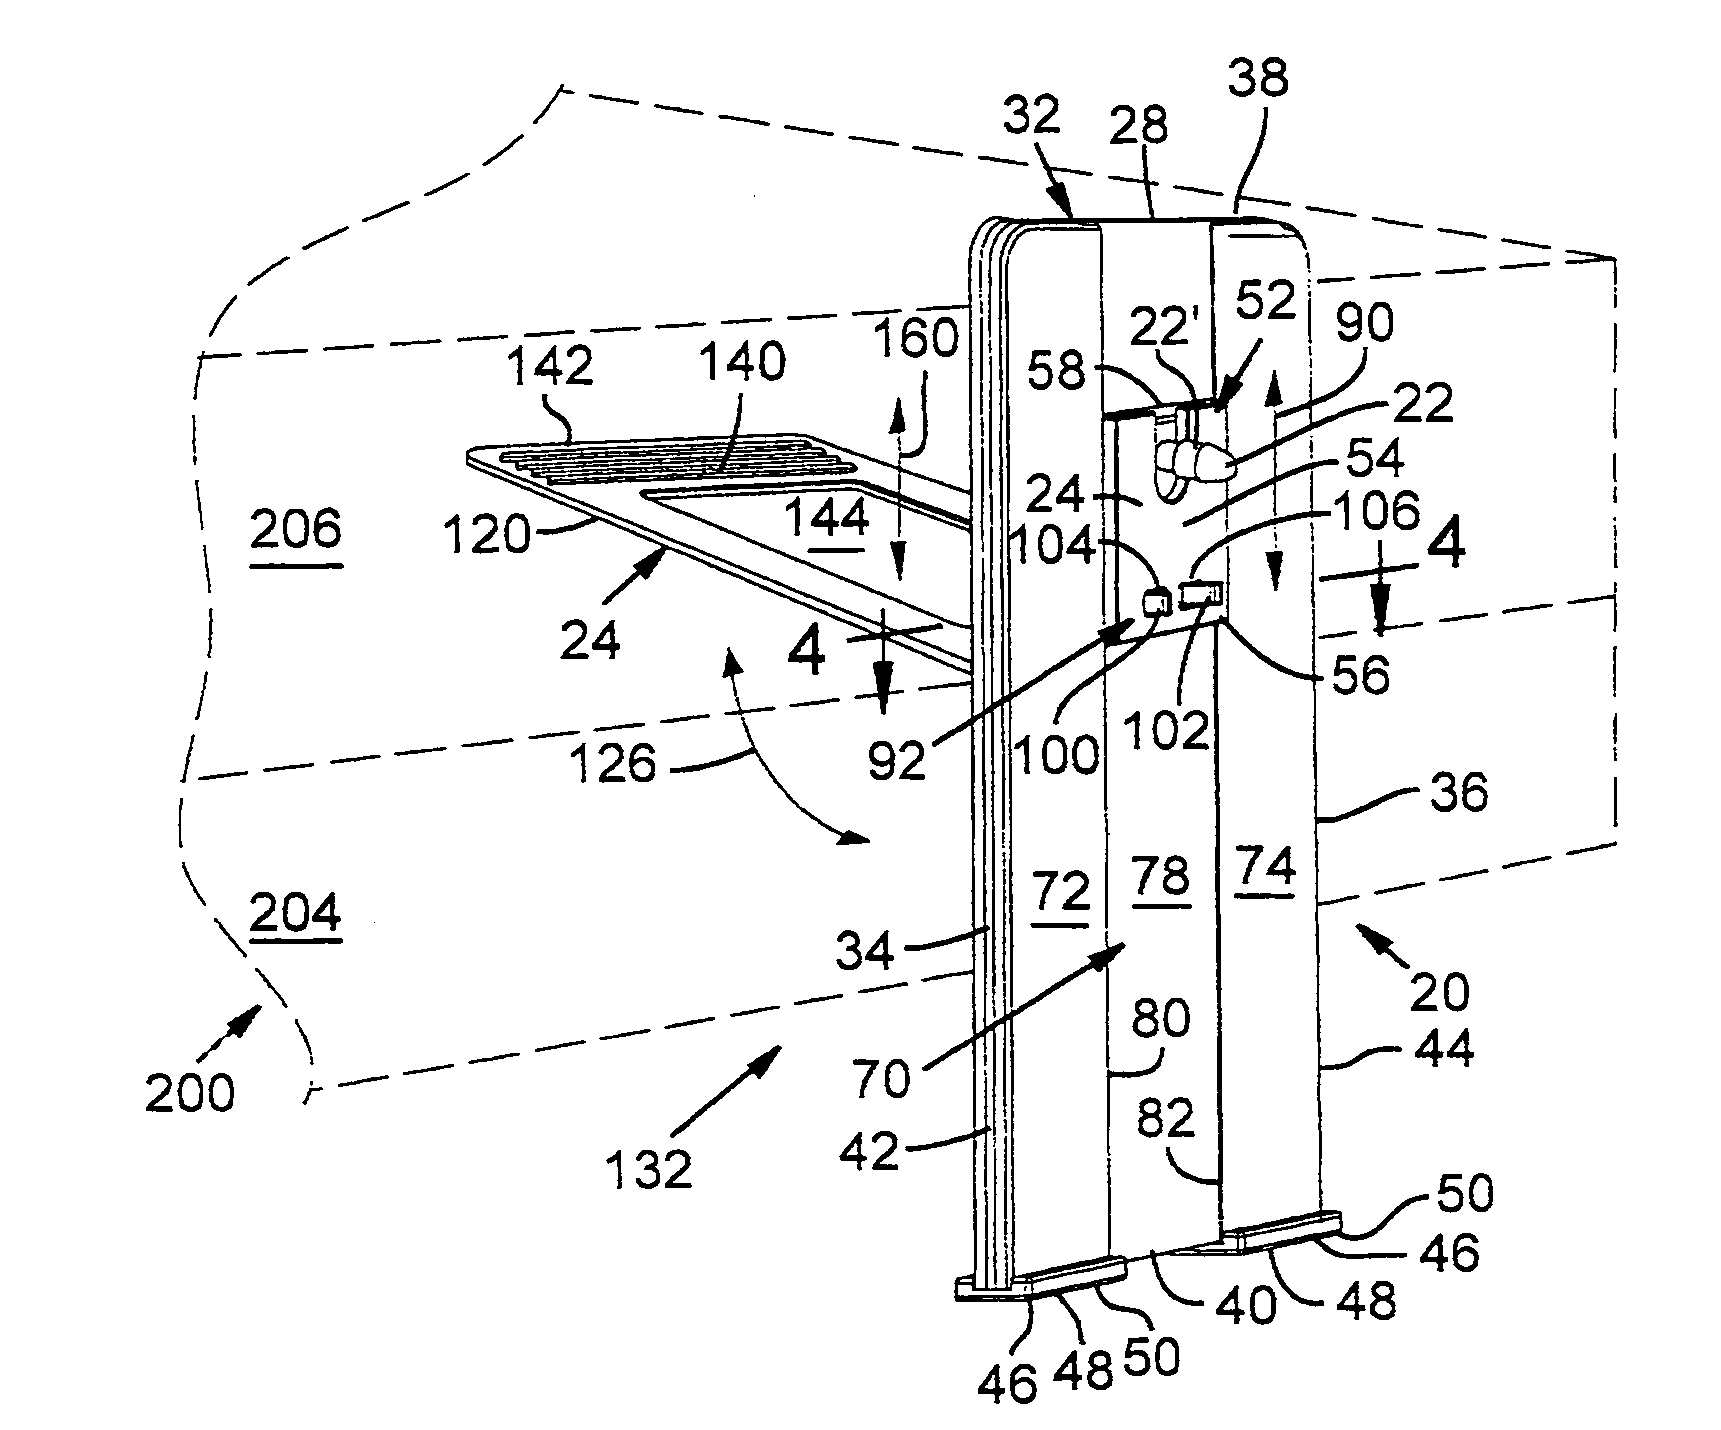 Phallic device mount and method of use